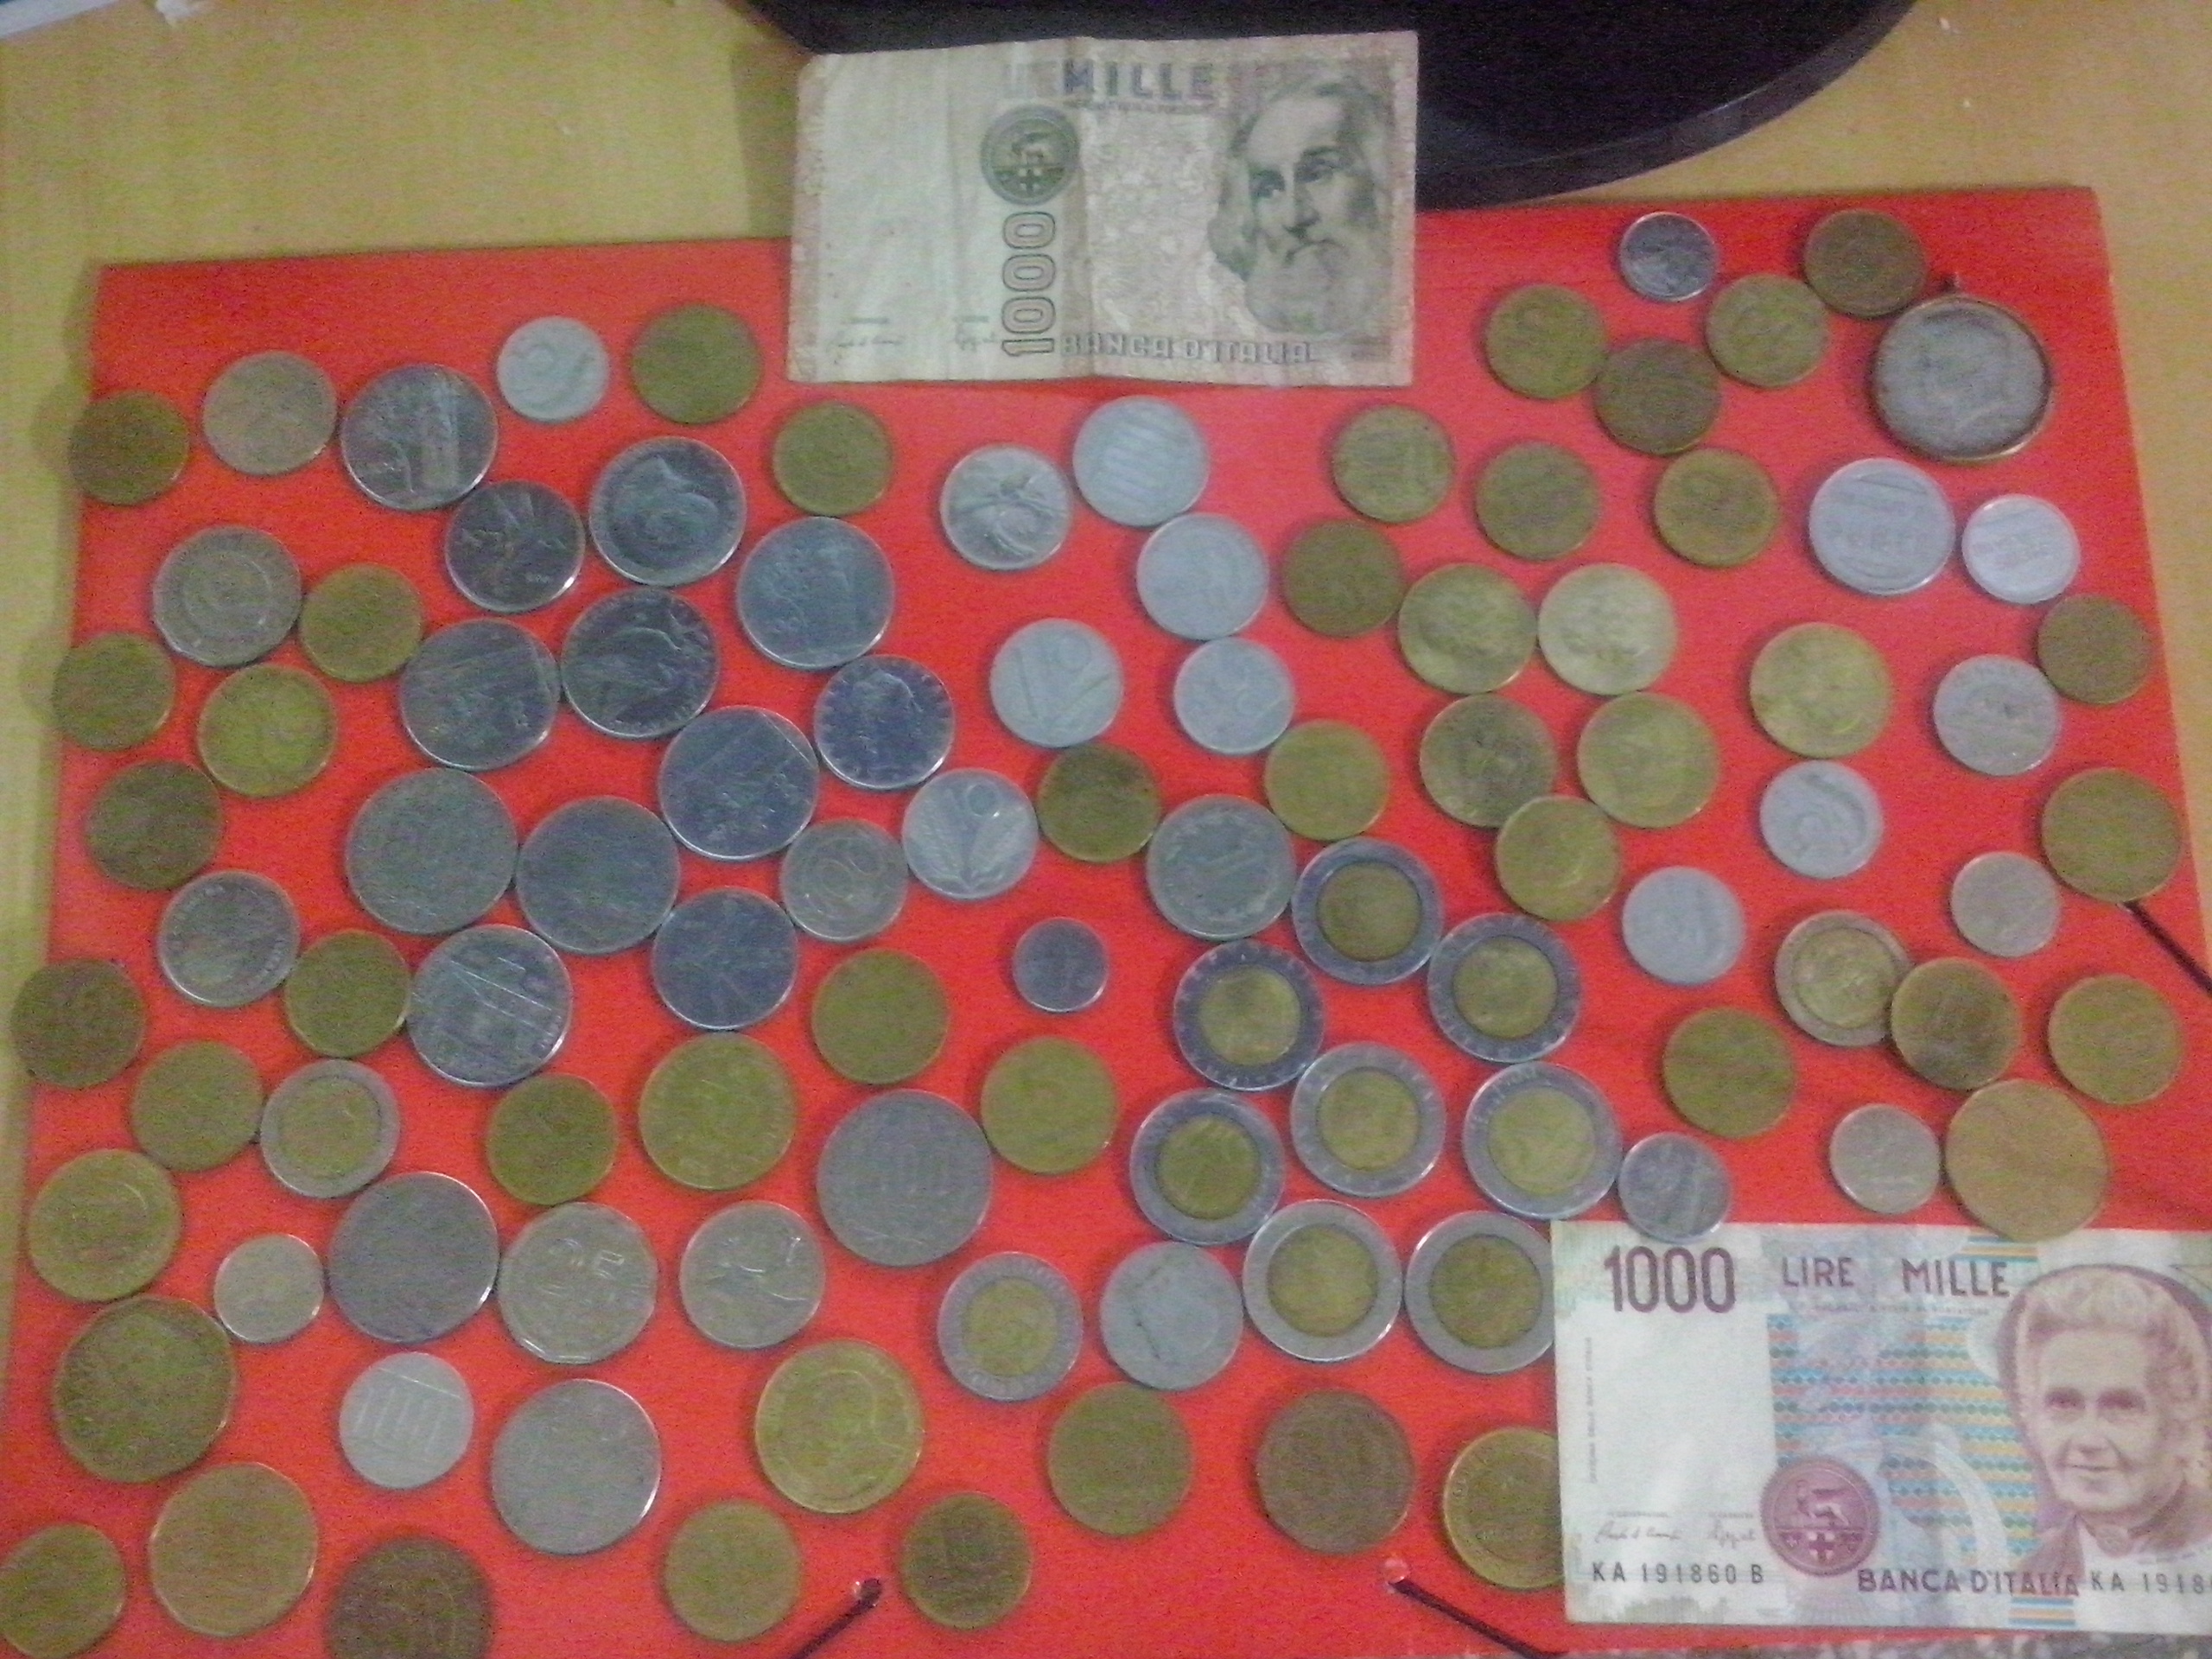 vendo un lote de monedas extranjeras y argentinas + 2 billetes de liras italianas.